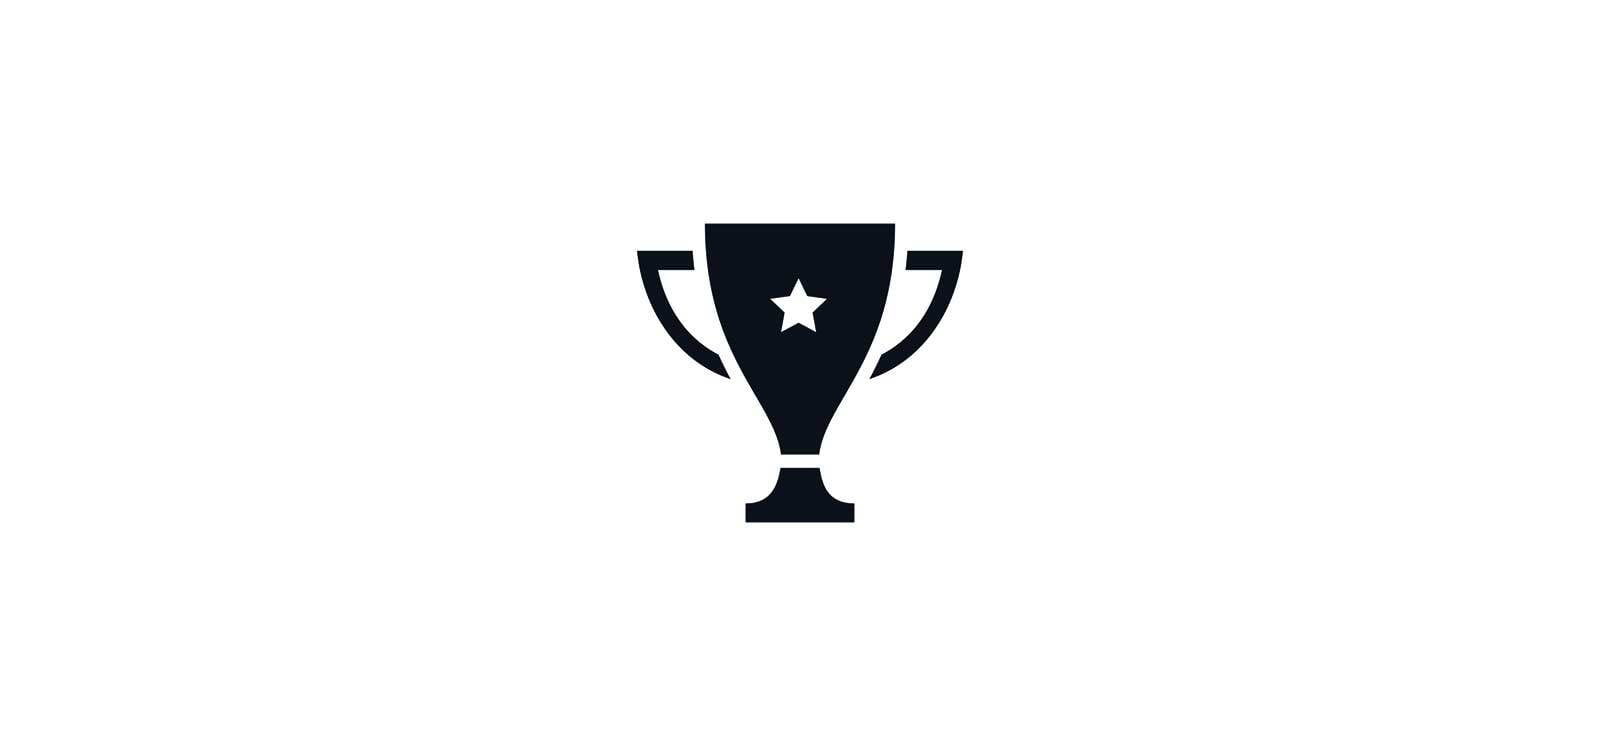 Auszeichnung von SPARKS als Top-Arbeitgeber in der Kategorie "Automobil und Zulieferer" im Mittelstand